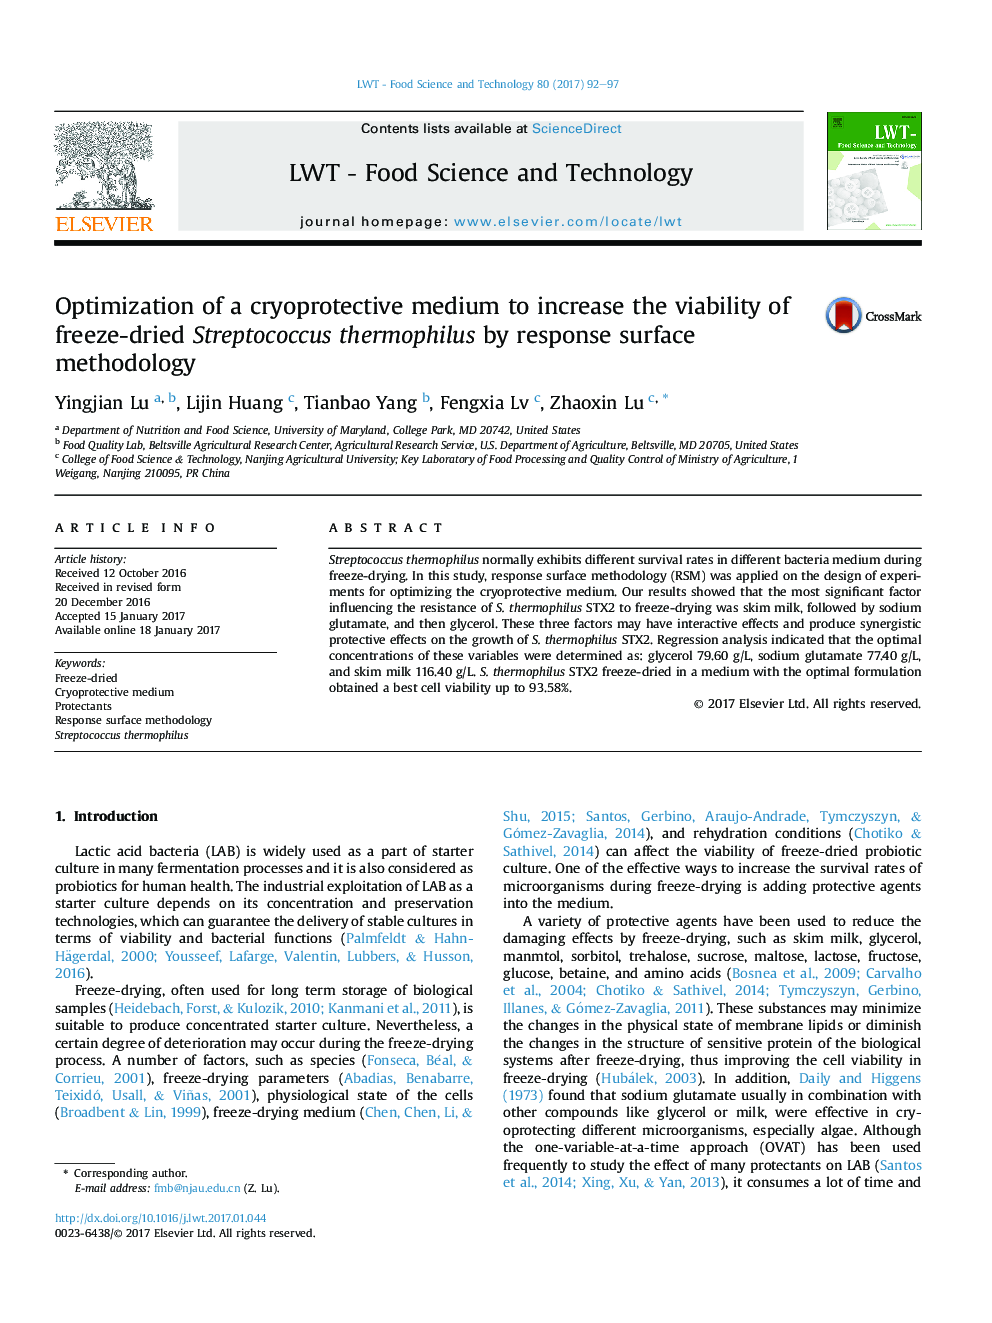 بهینه سازی یک محیط حفاظت کننده برای افزایش قابلیت انجماد استرپتوکوک ترموفیلوس با استفاده از روش سطح پاسخ 